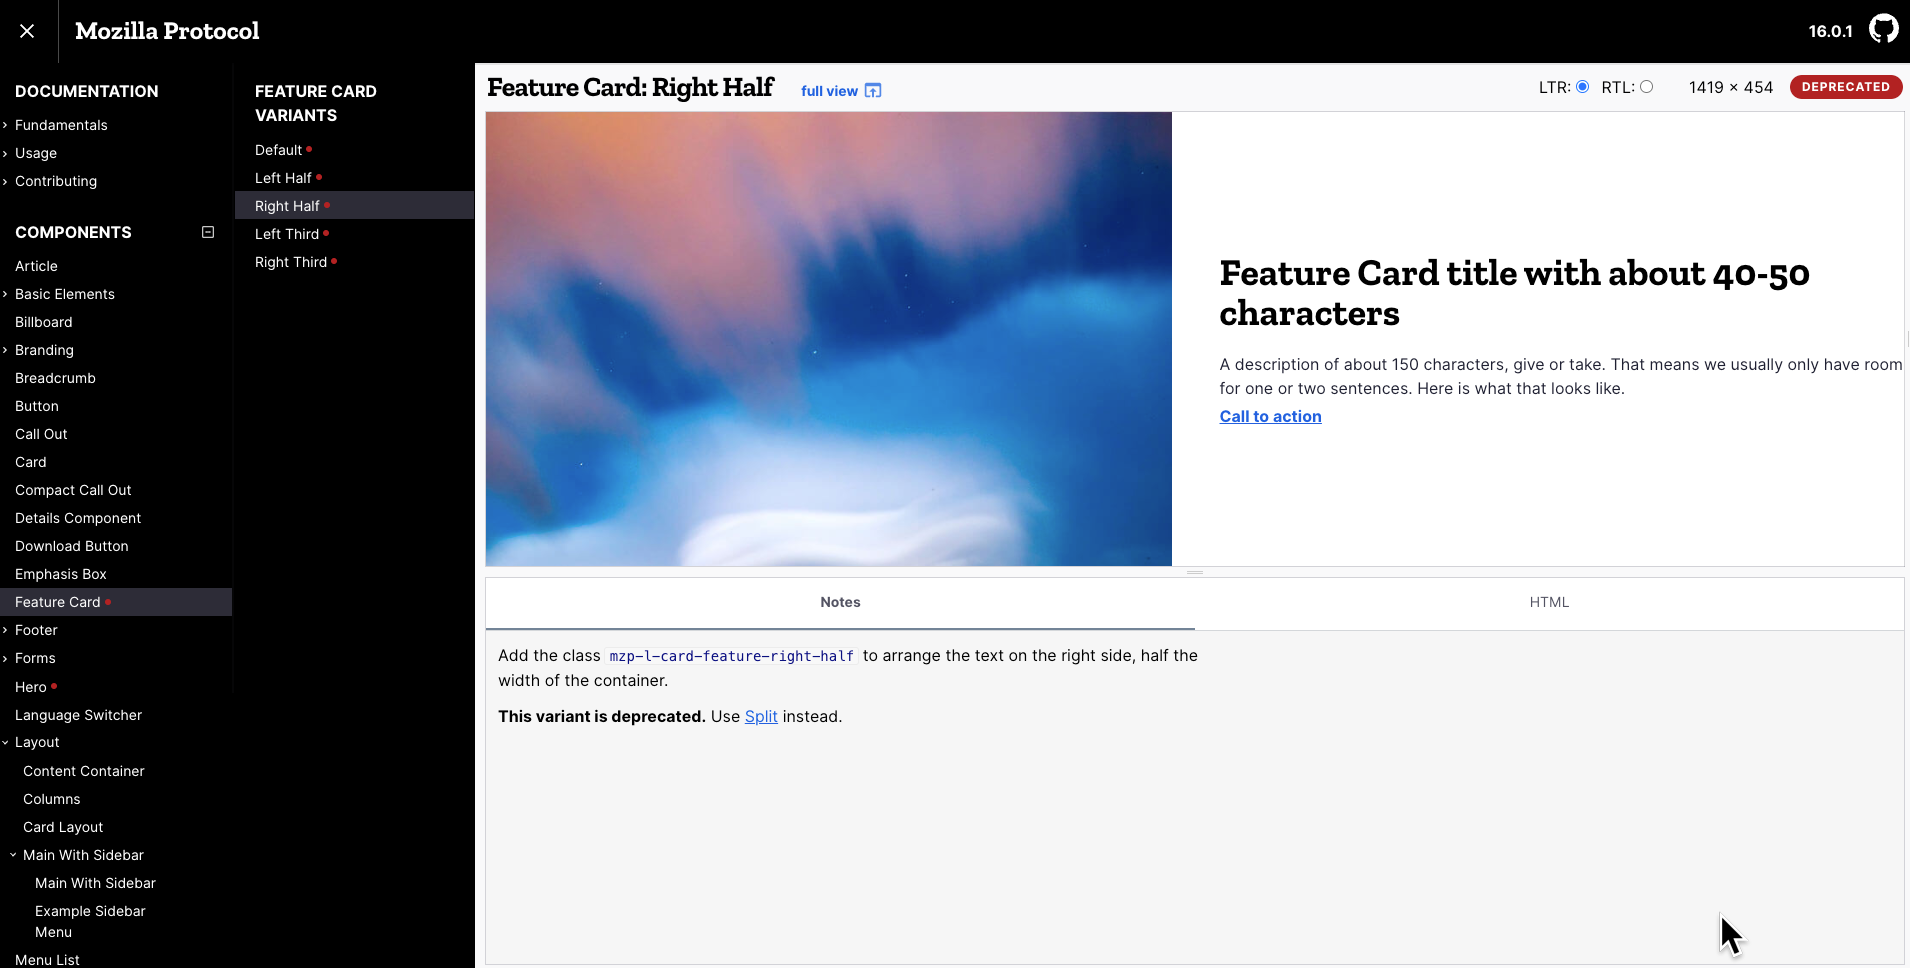 Cursor_and_Feature_Card__Right_Half___Mozilla_Protocol